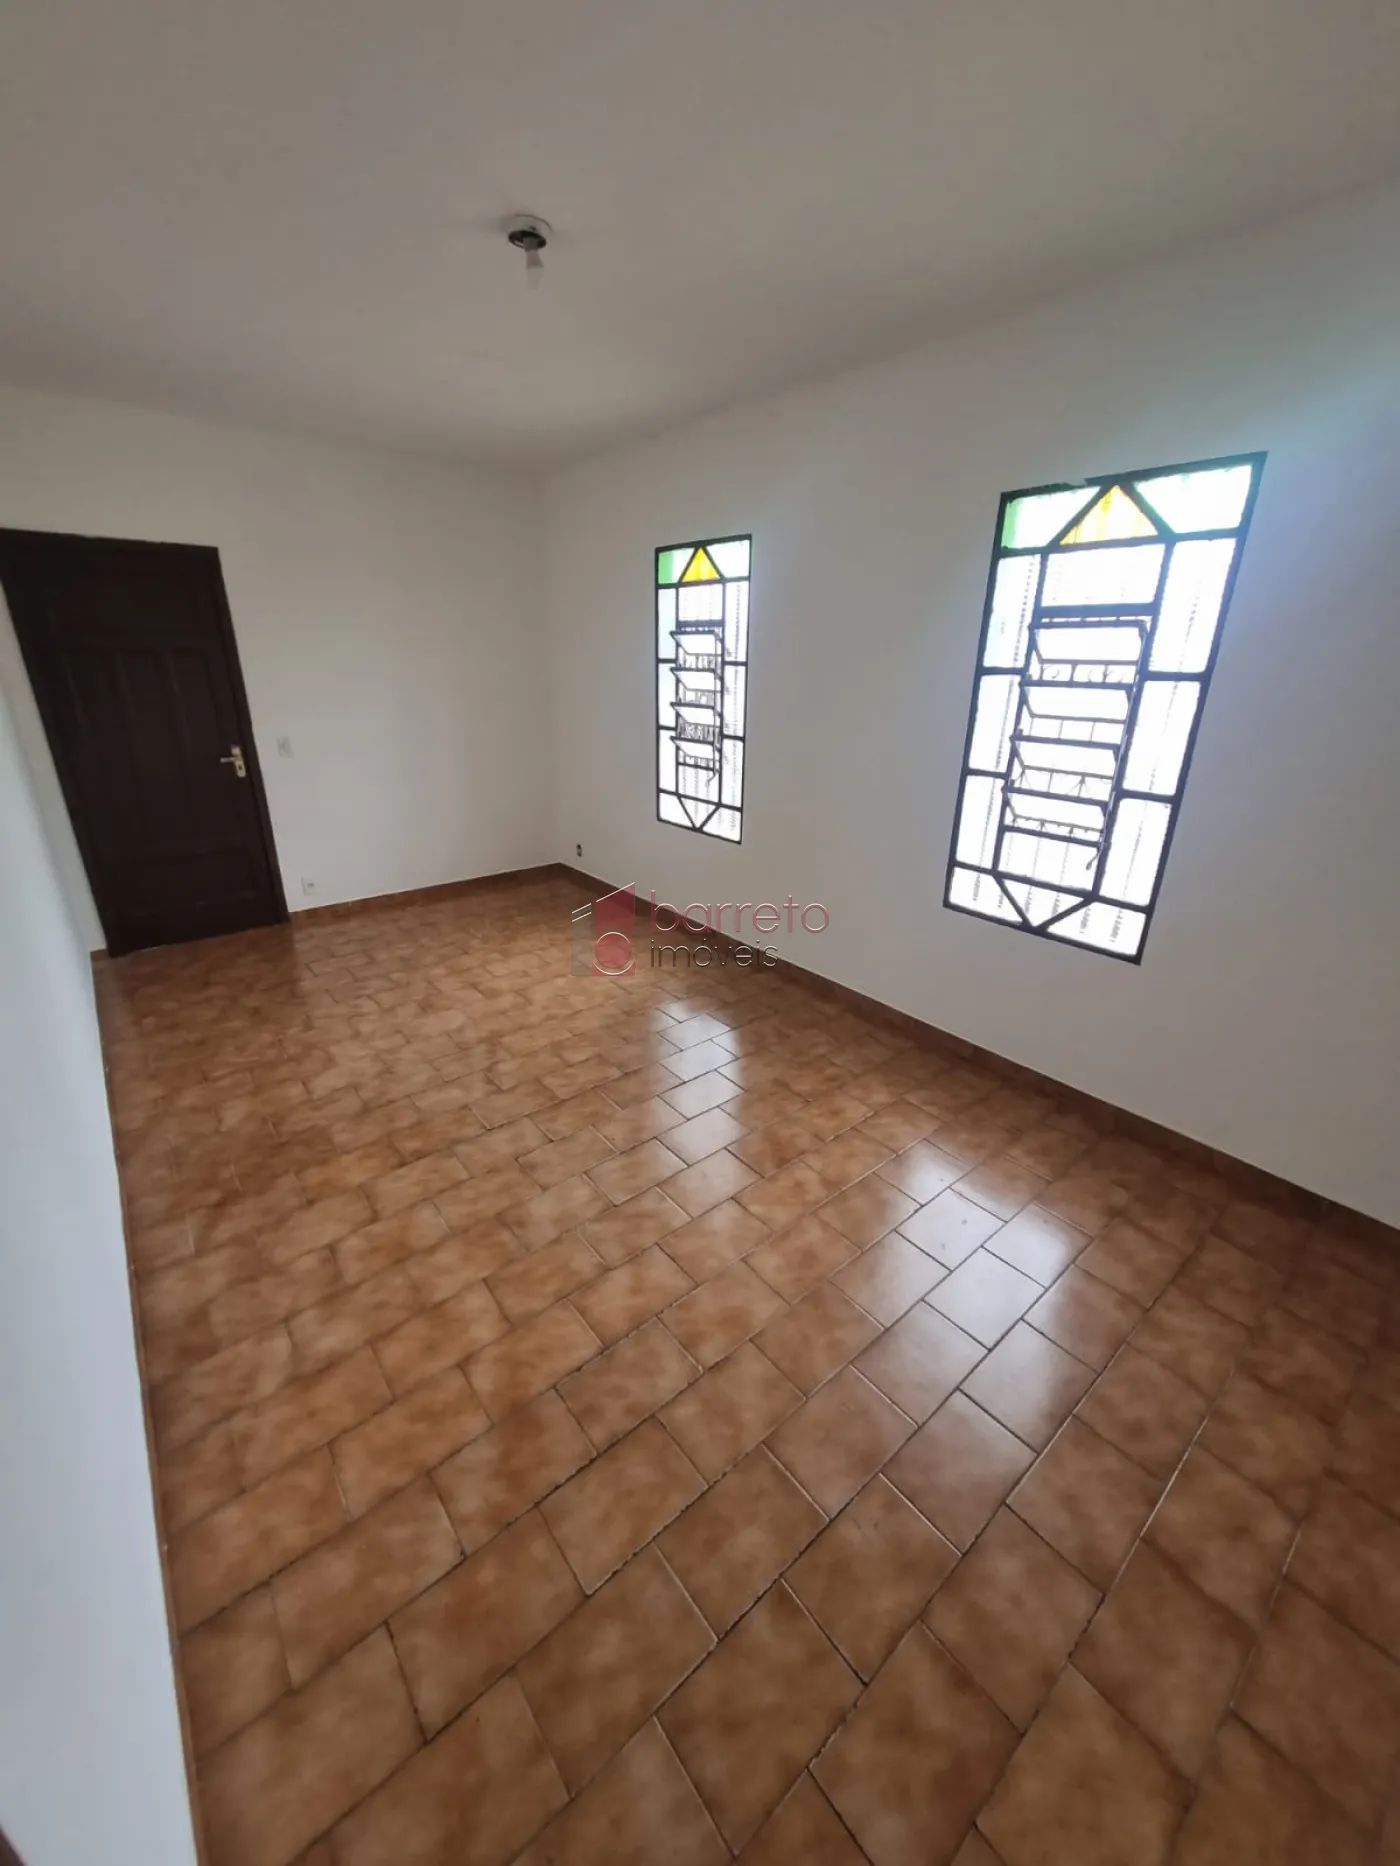 Comprar Casa / Padrão em Jundiaí R$ 371.000,00 - Foto 7